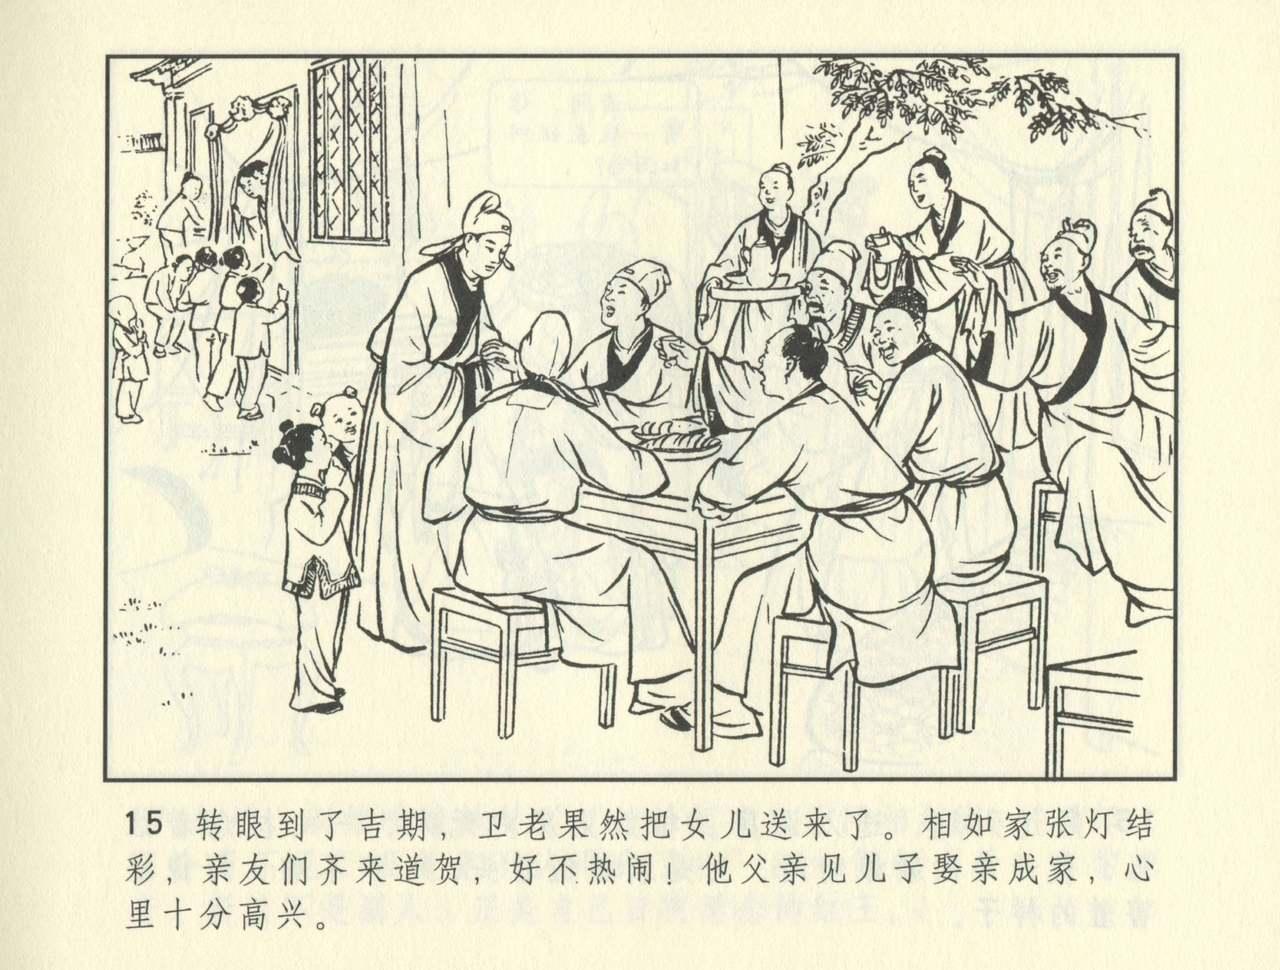 聊斋志异 张玮等绘 天津人民美术出版社 卷二十一 ~ 三十 355